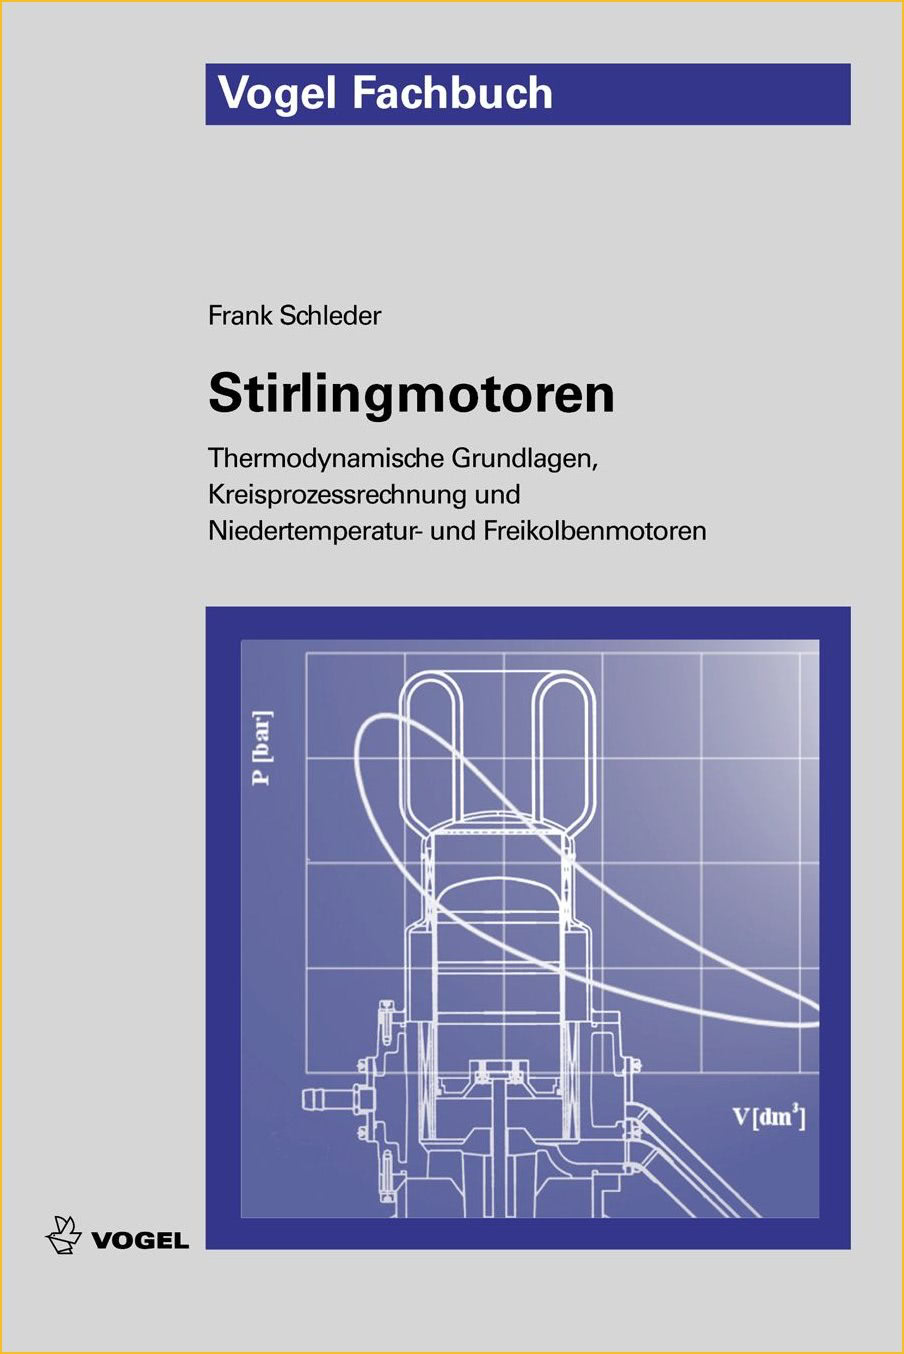 Das Fachbuch "Stirlingmotoren" von Frank Schleder